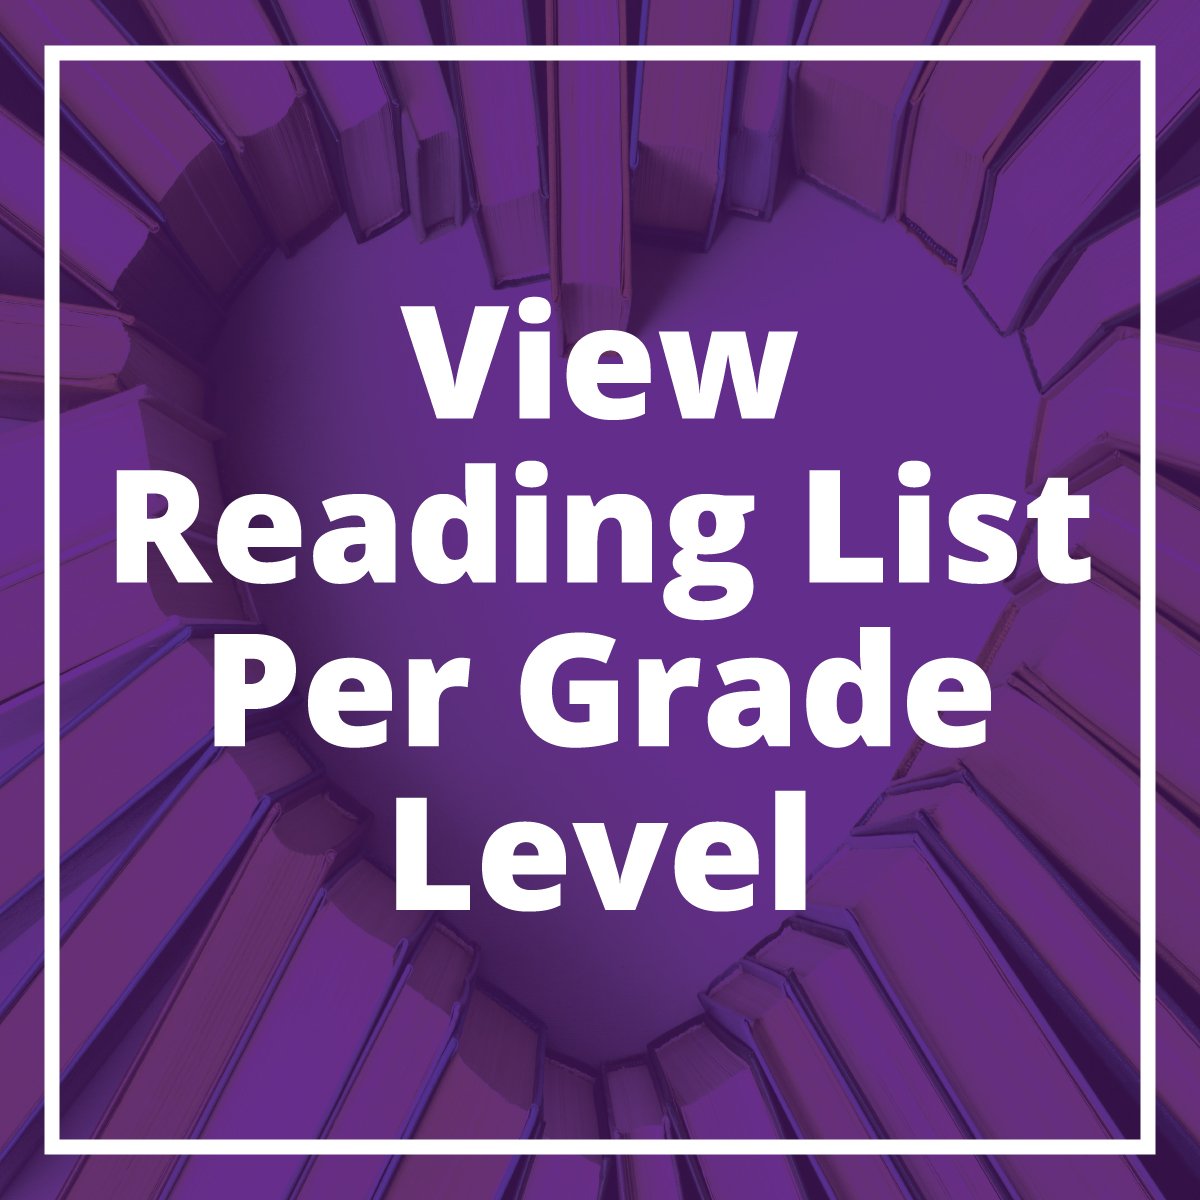 View reading list per grade level